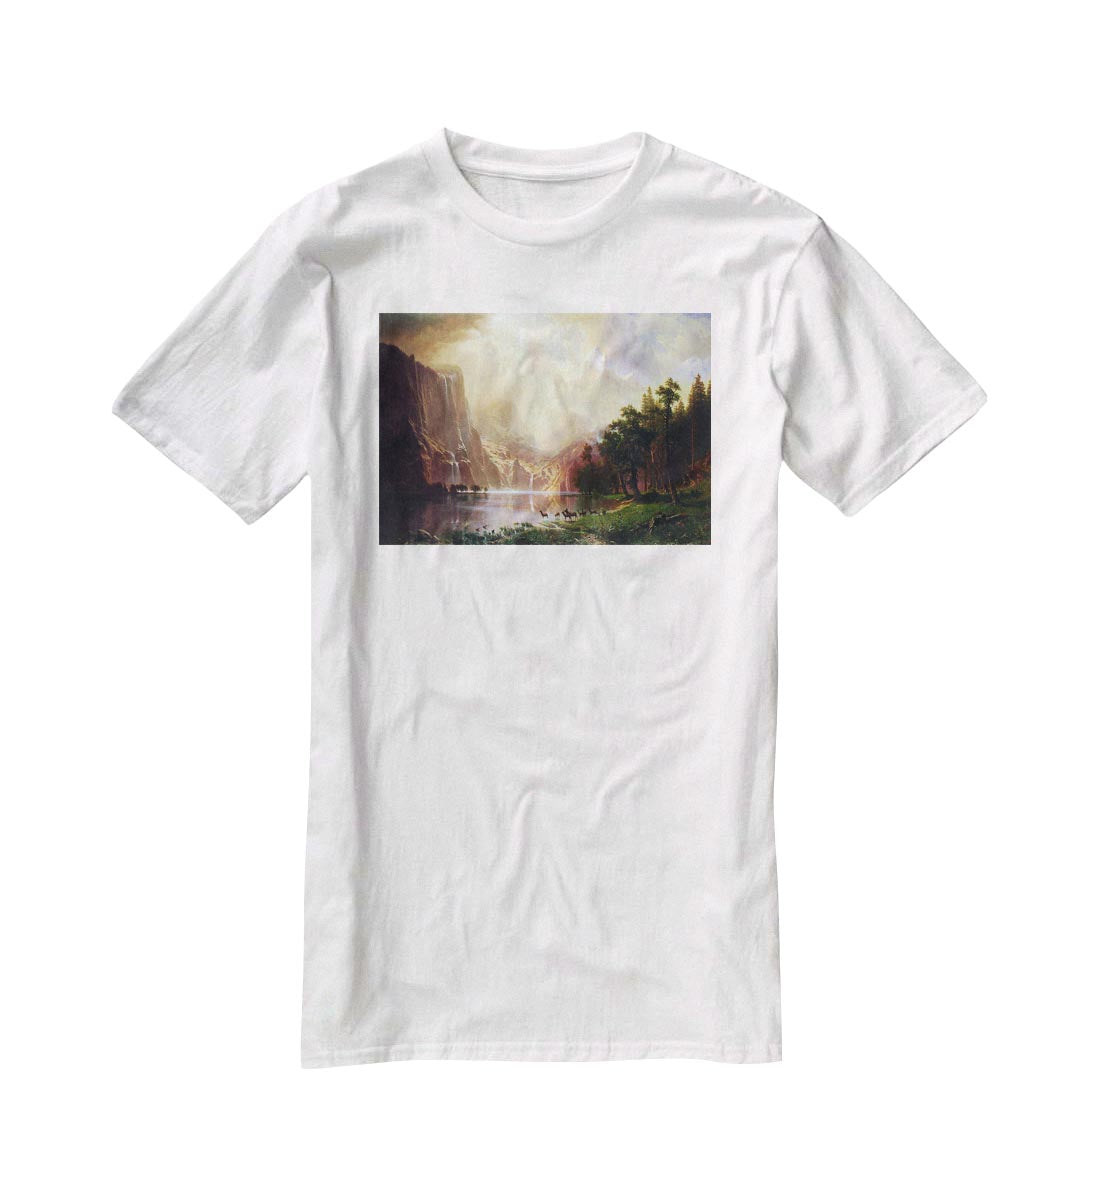 Between the Sierra Nevada Mountains by Bierstadt T-Shirt - Canvas Art Rocks - 5